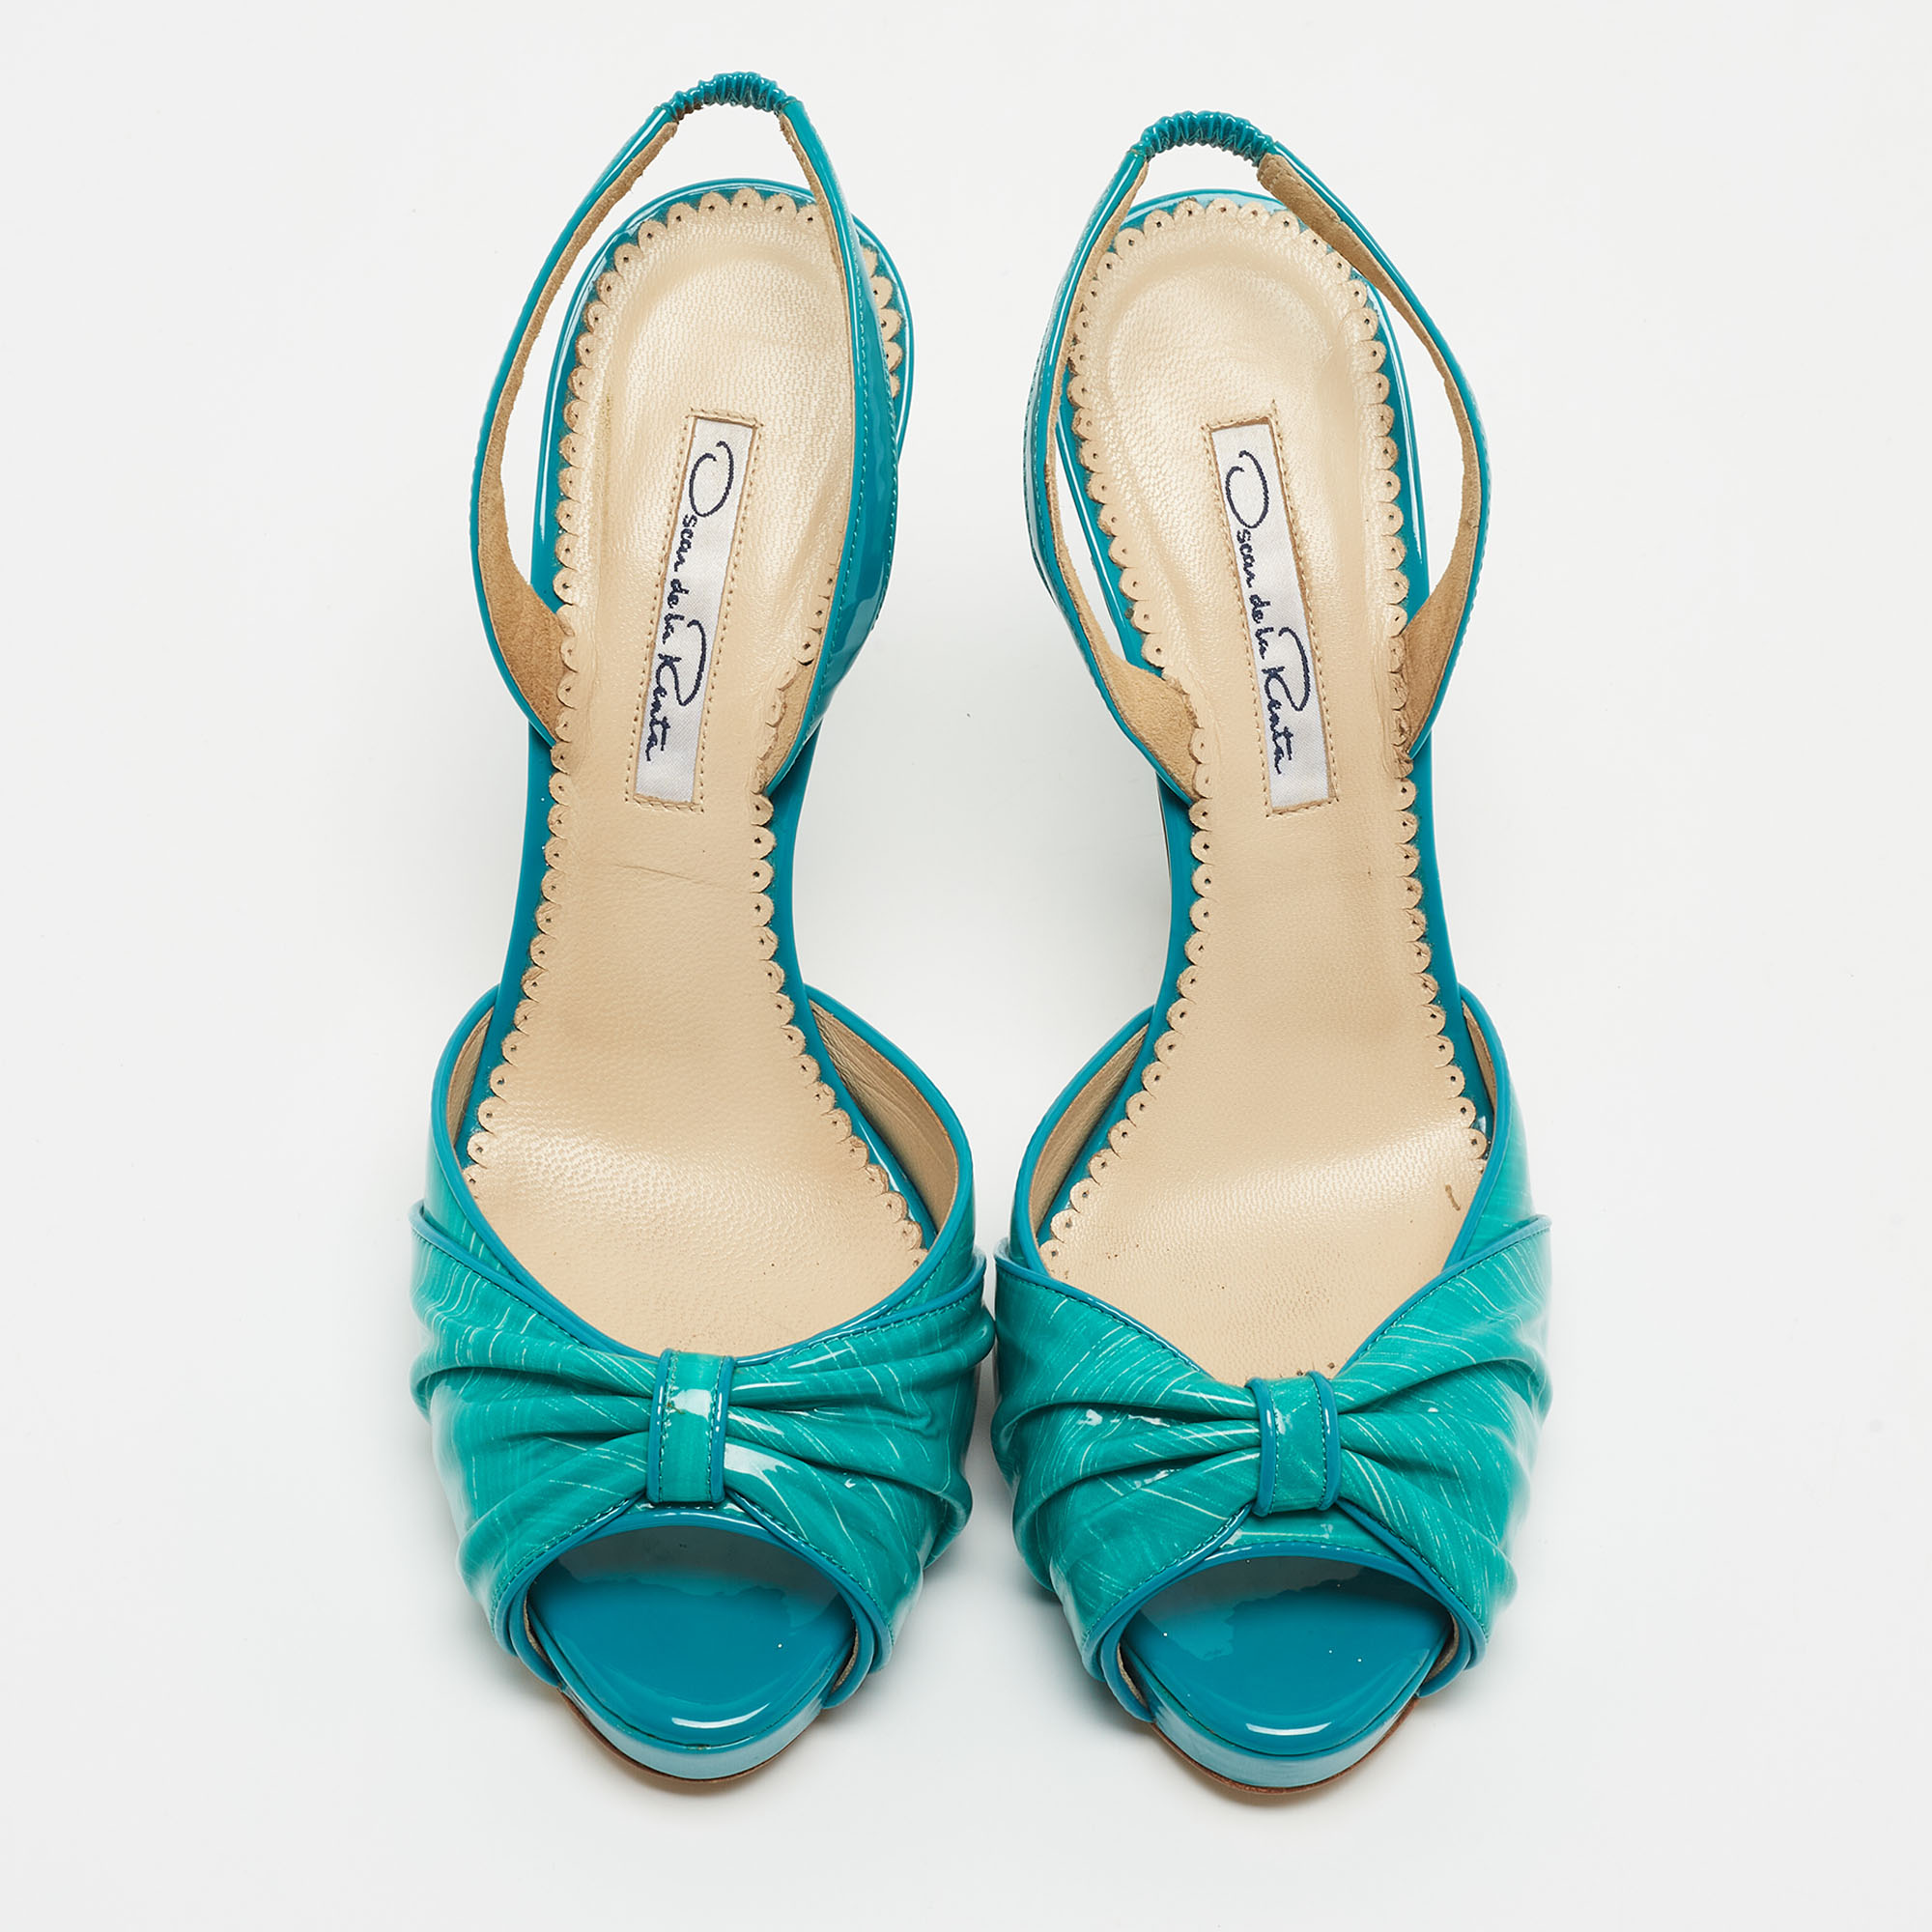 Oscar De La Renta Turquoise Patent Leather Bow Platform Slingback Sandals Size 36.5